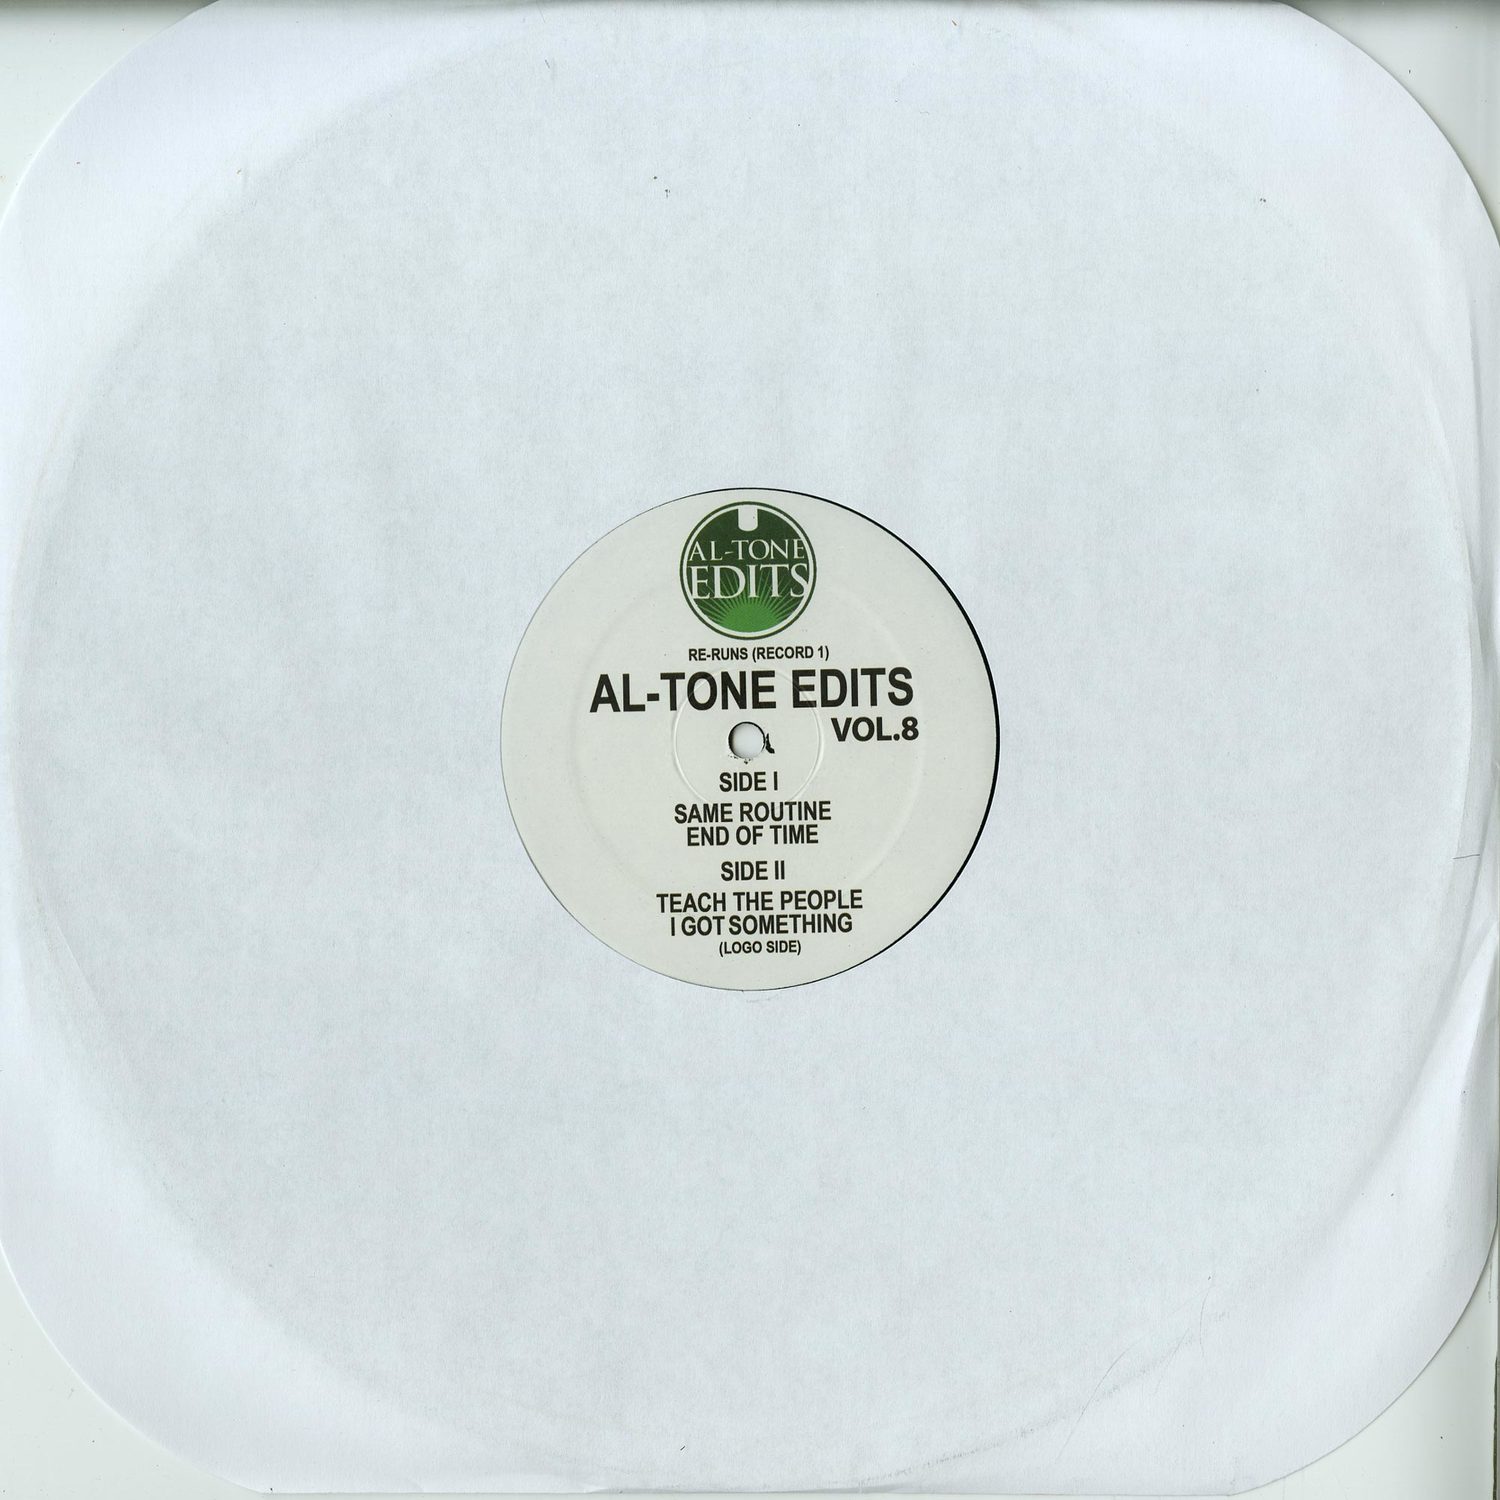 Al-Tone Edits - AL-TONE EDITS VOL. 8